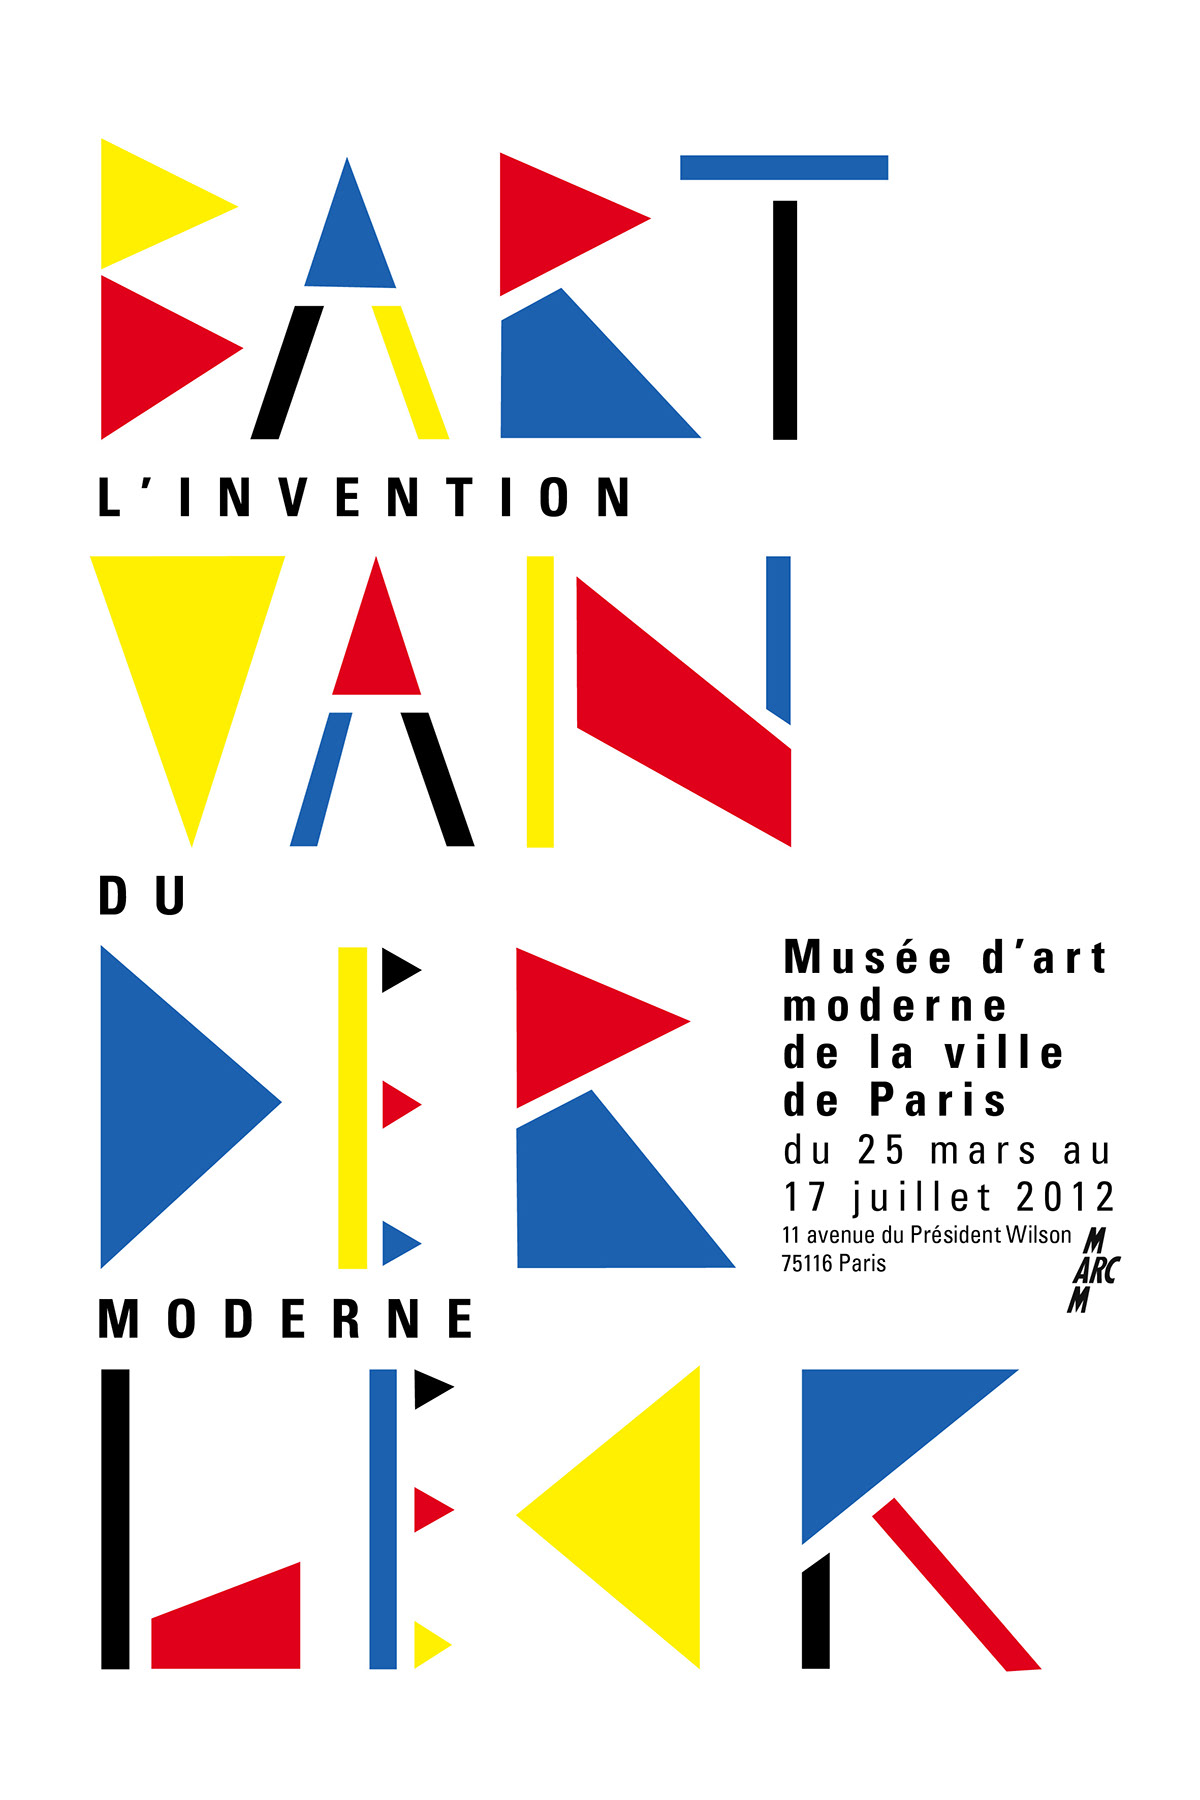 Bart Van der leck poster affiche rvb museum design shape chloe marchand Le Monde world newspaper